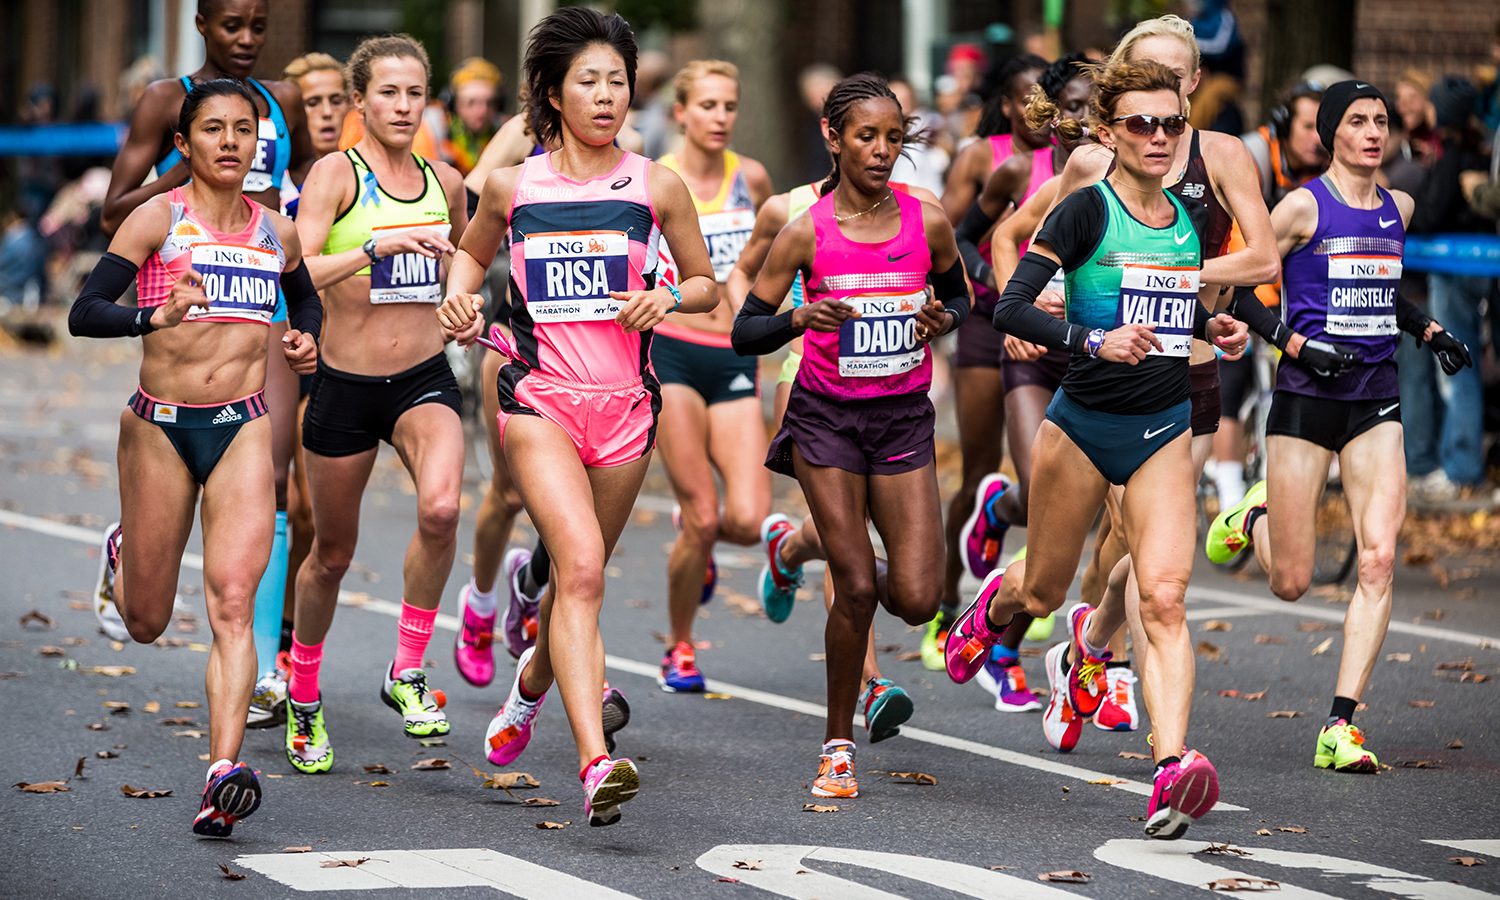 Corsa e donne: cresce la voglia di correre tra le donne